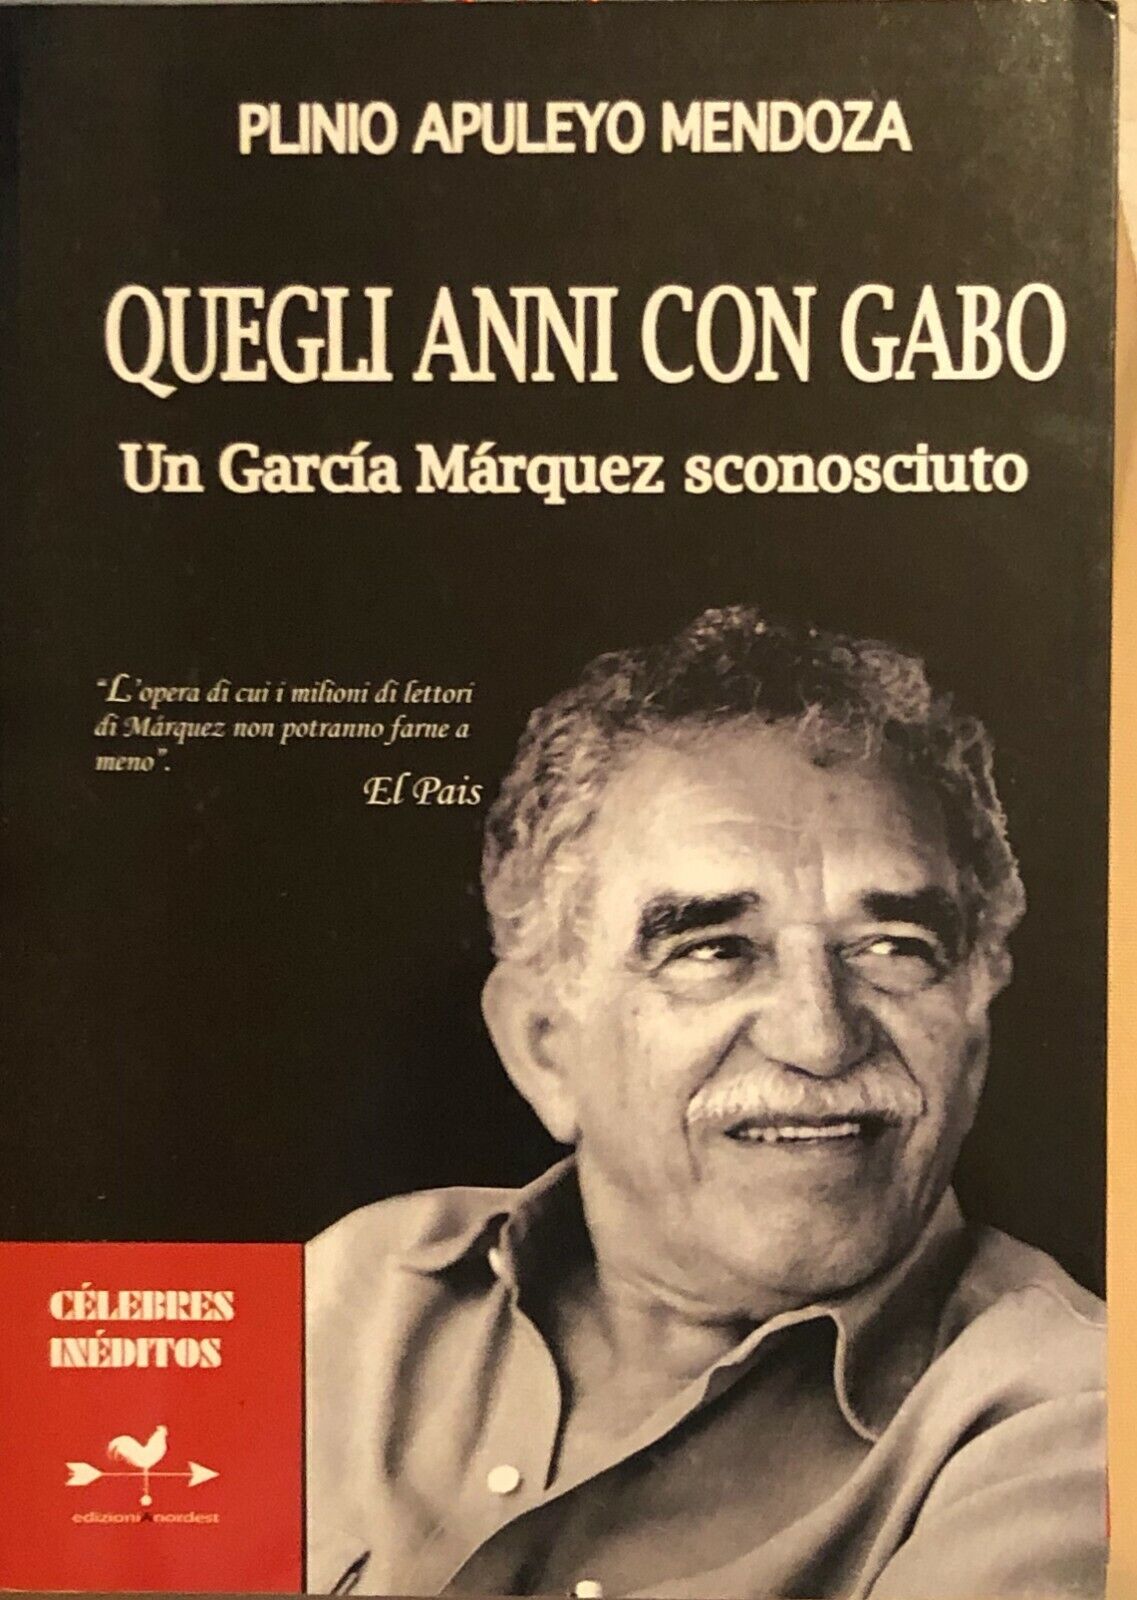 Quegli anni con Gabo. Un Garc?a M?rquez sconosciuto di Plinio Apulejo Mendoza, 2